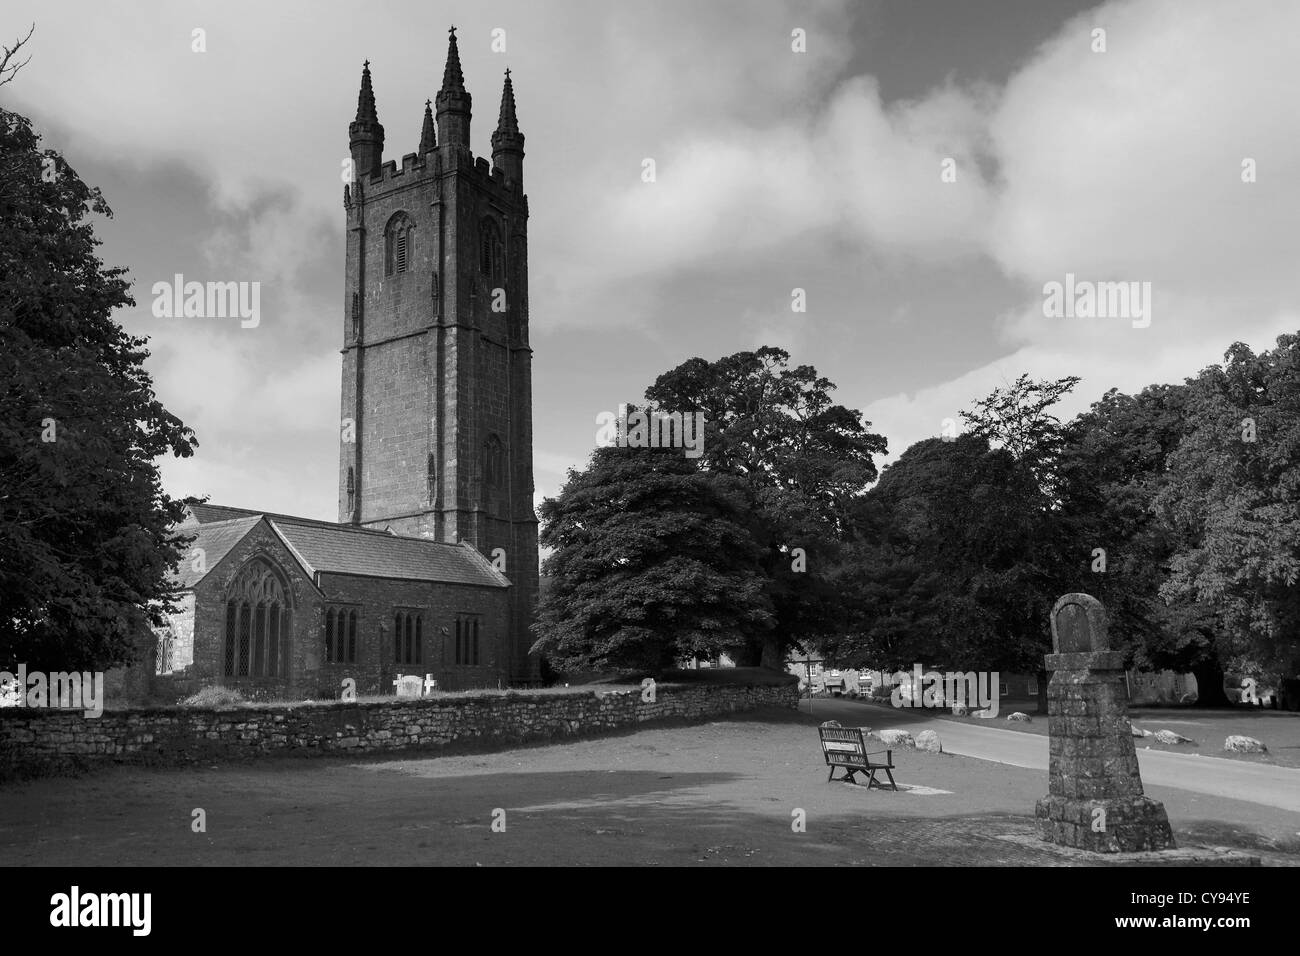 L'été, St Pancras Parish Church, Widecombe dans le village Maure, Dartmoor National Park, Devon, England, UK Banque D'Images